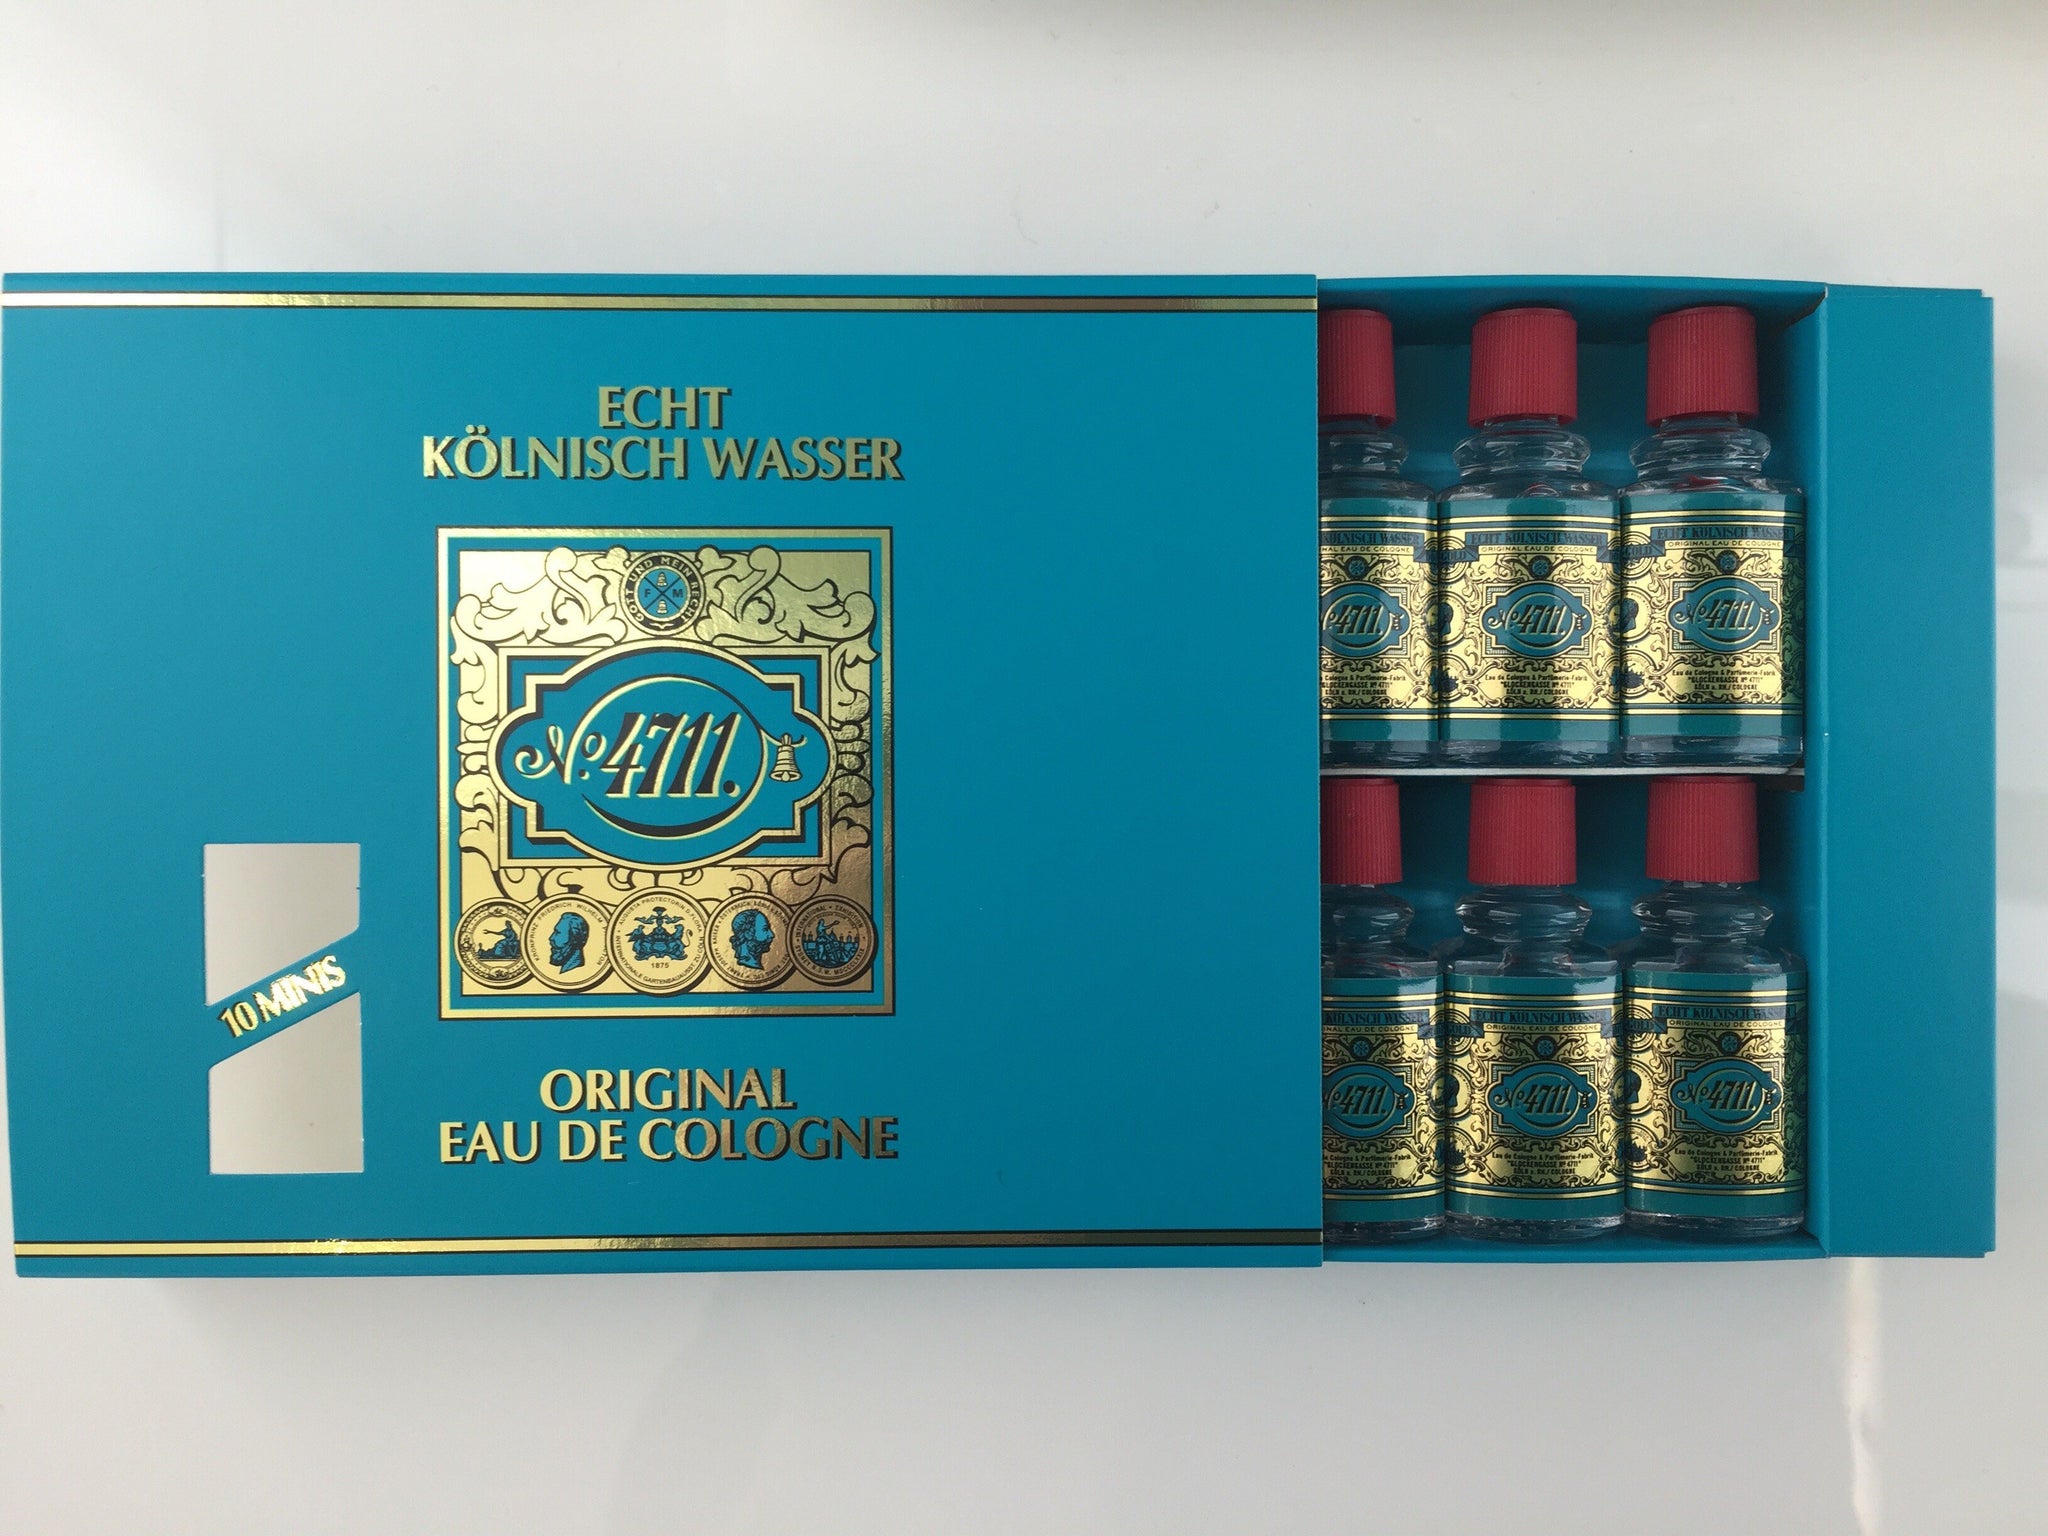 Ja China Heb geleerd 4711 Original Eau de Cologne, Party Box ( 10 x 3 ml) – 4711 ONLINE